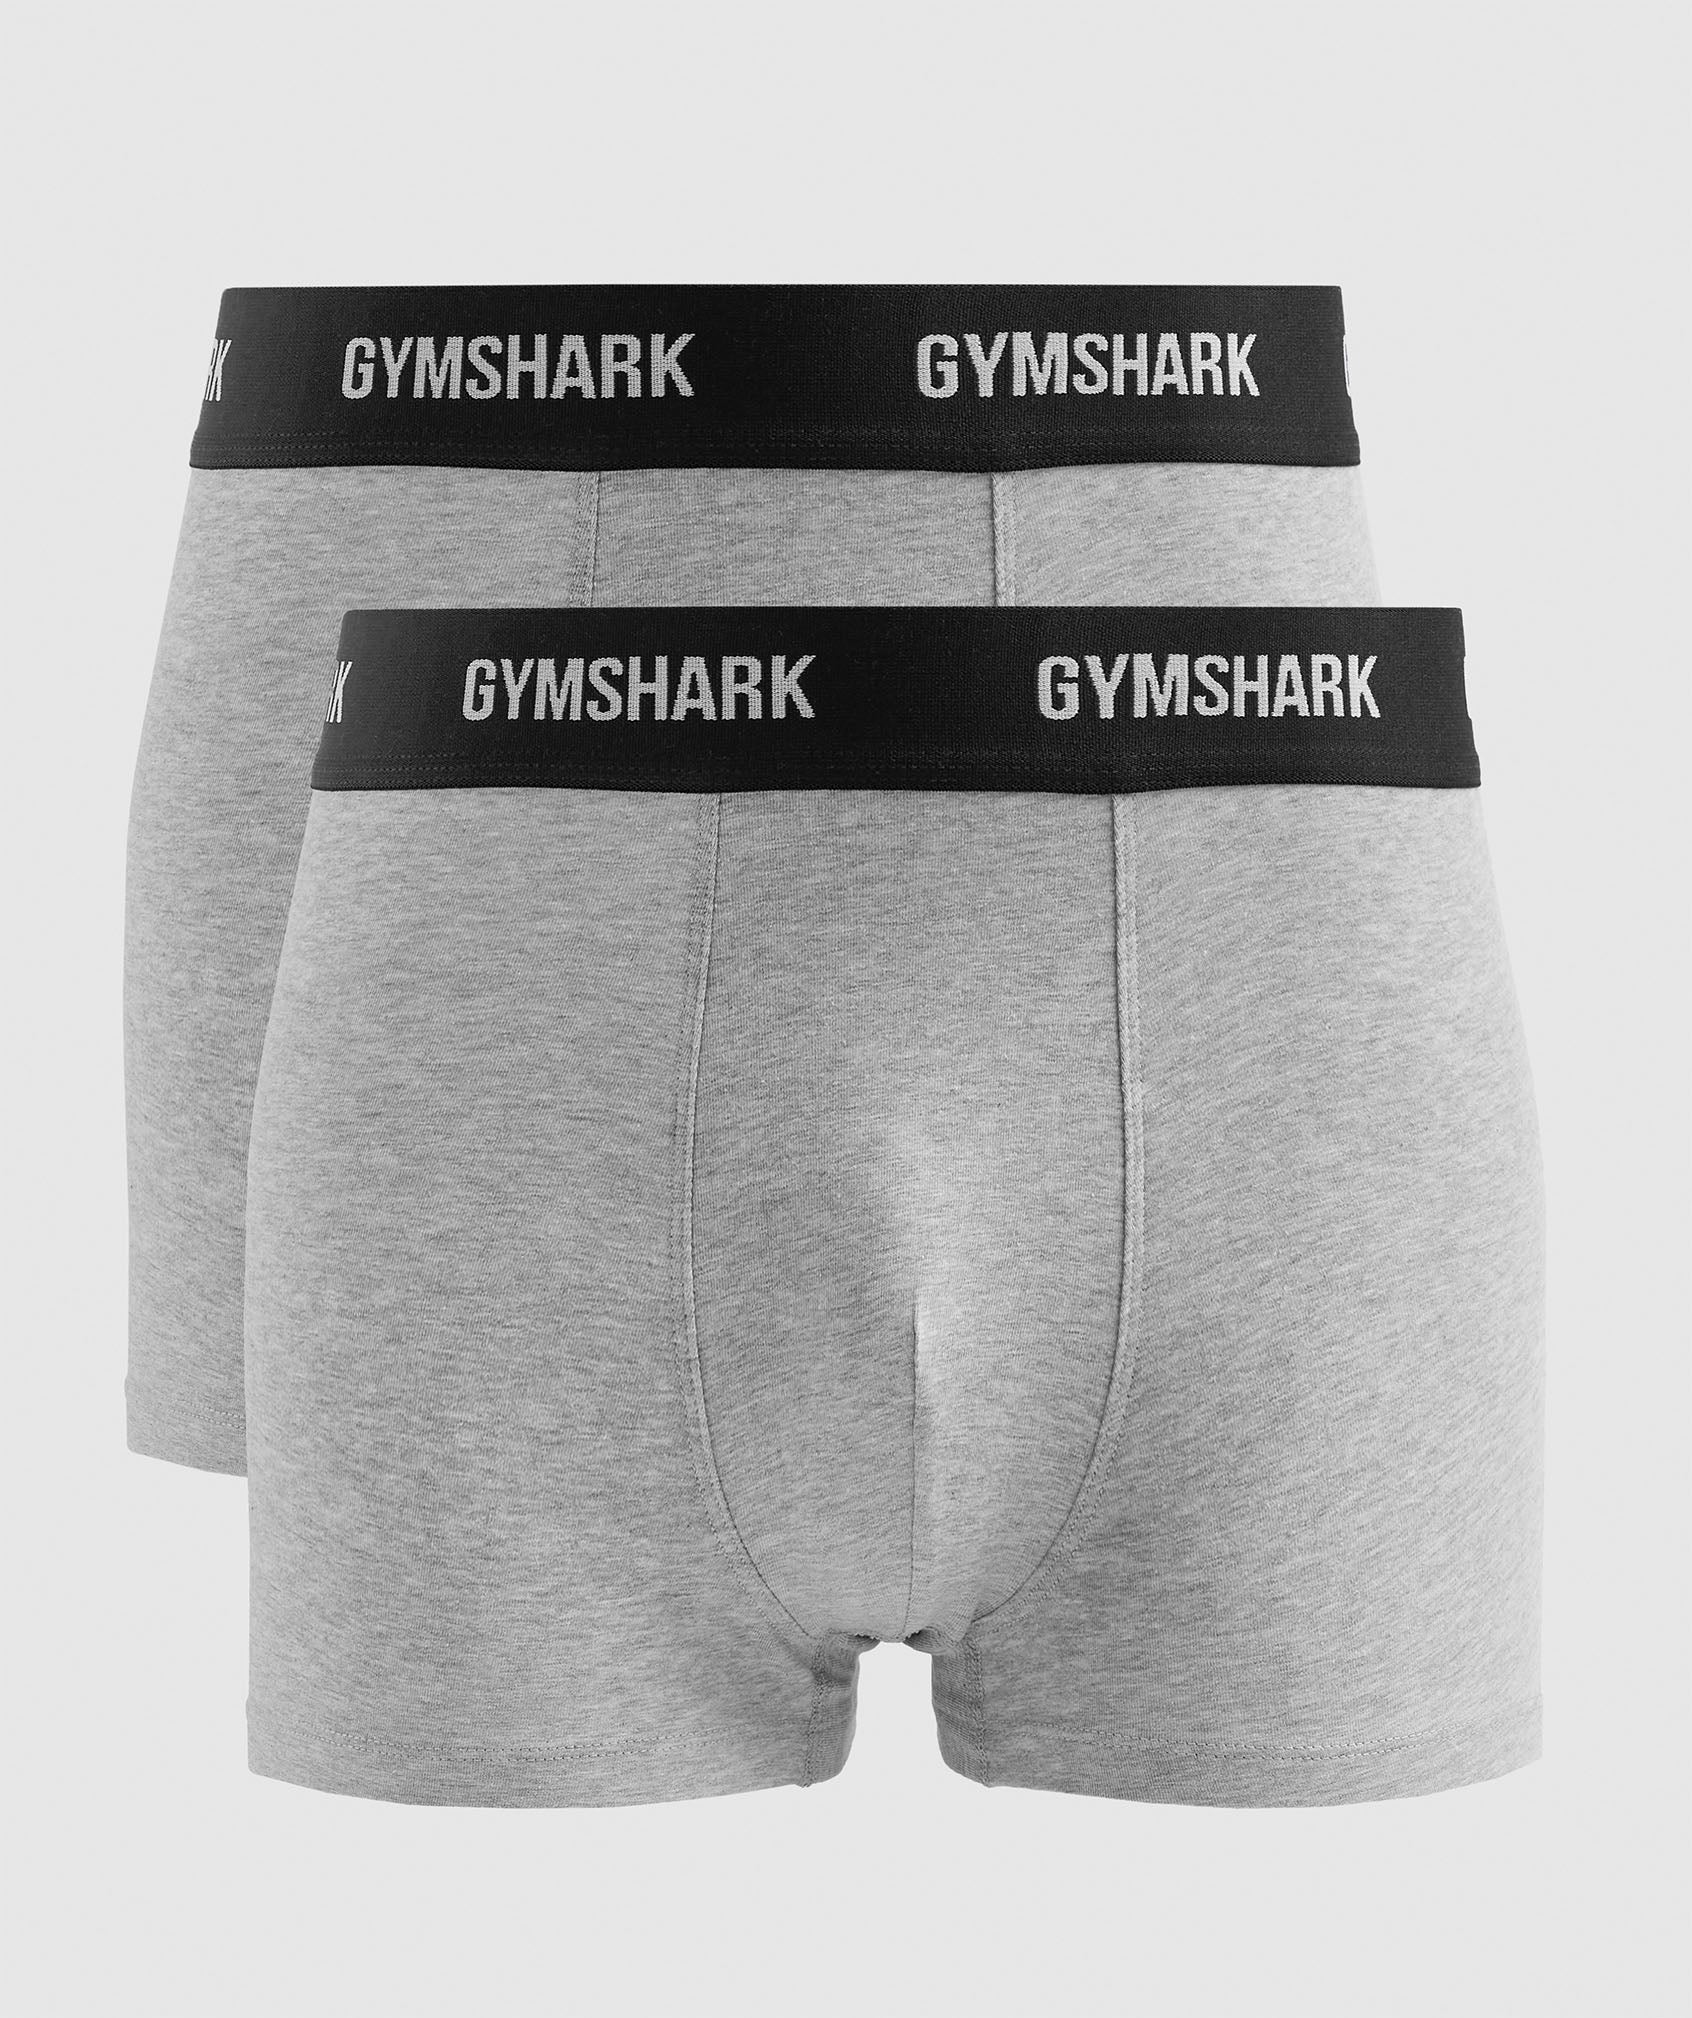 Buy Gymshark women plain brief panties black Online